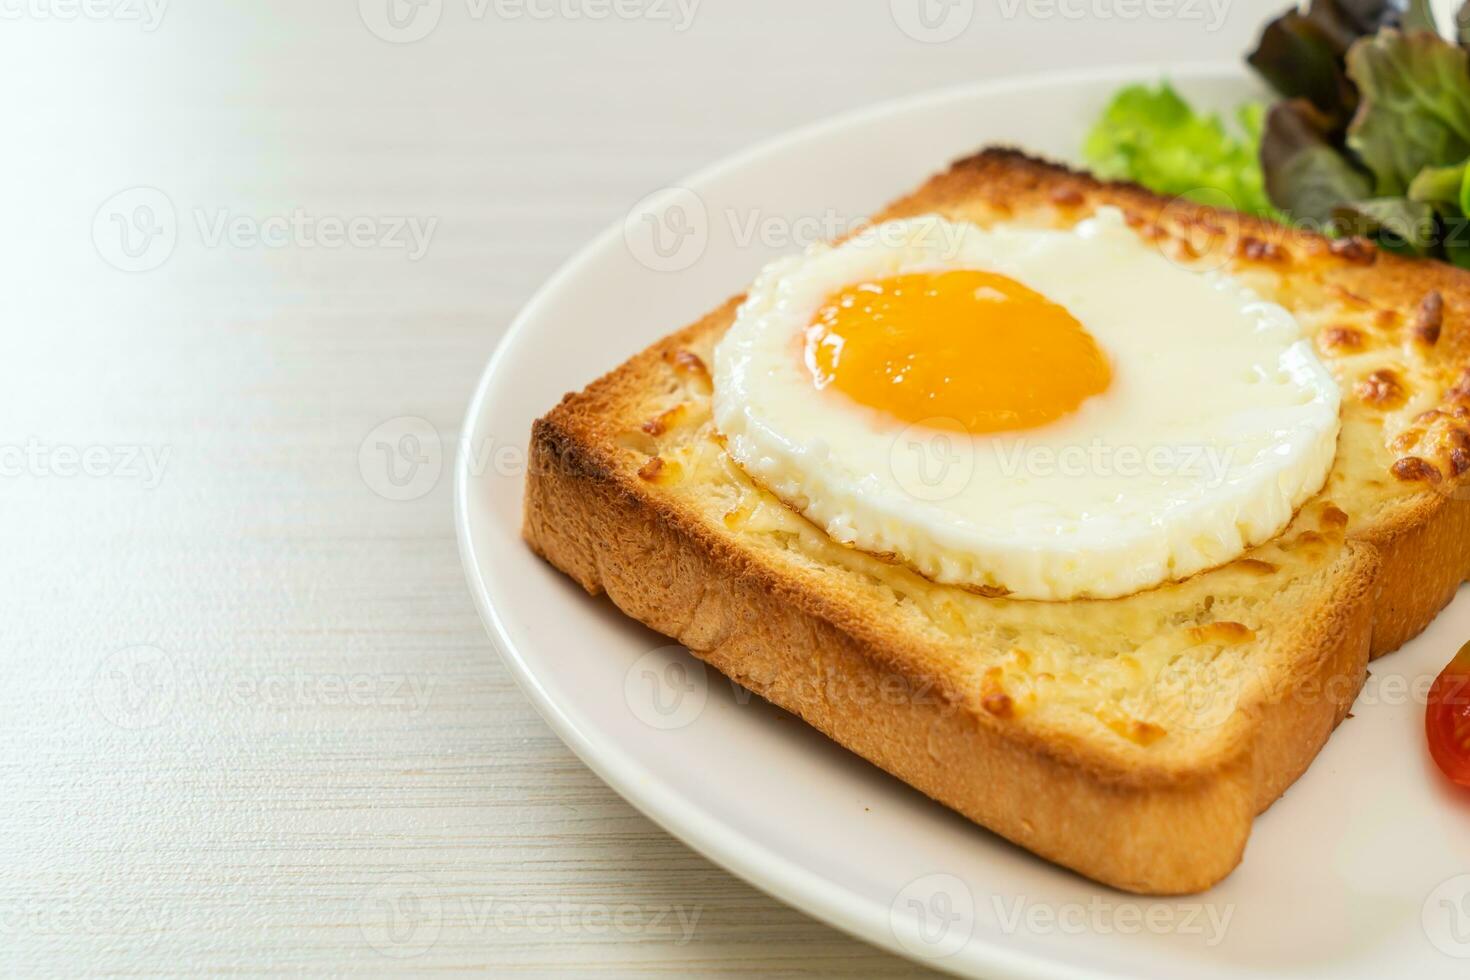 pane tostato con formaggio e uovo al tegamino foto